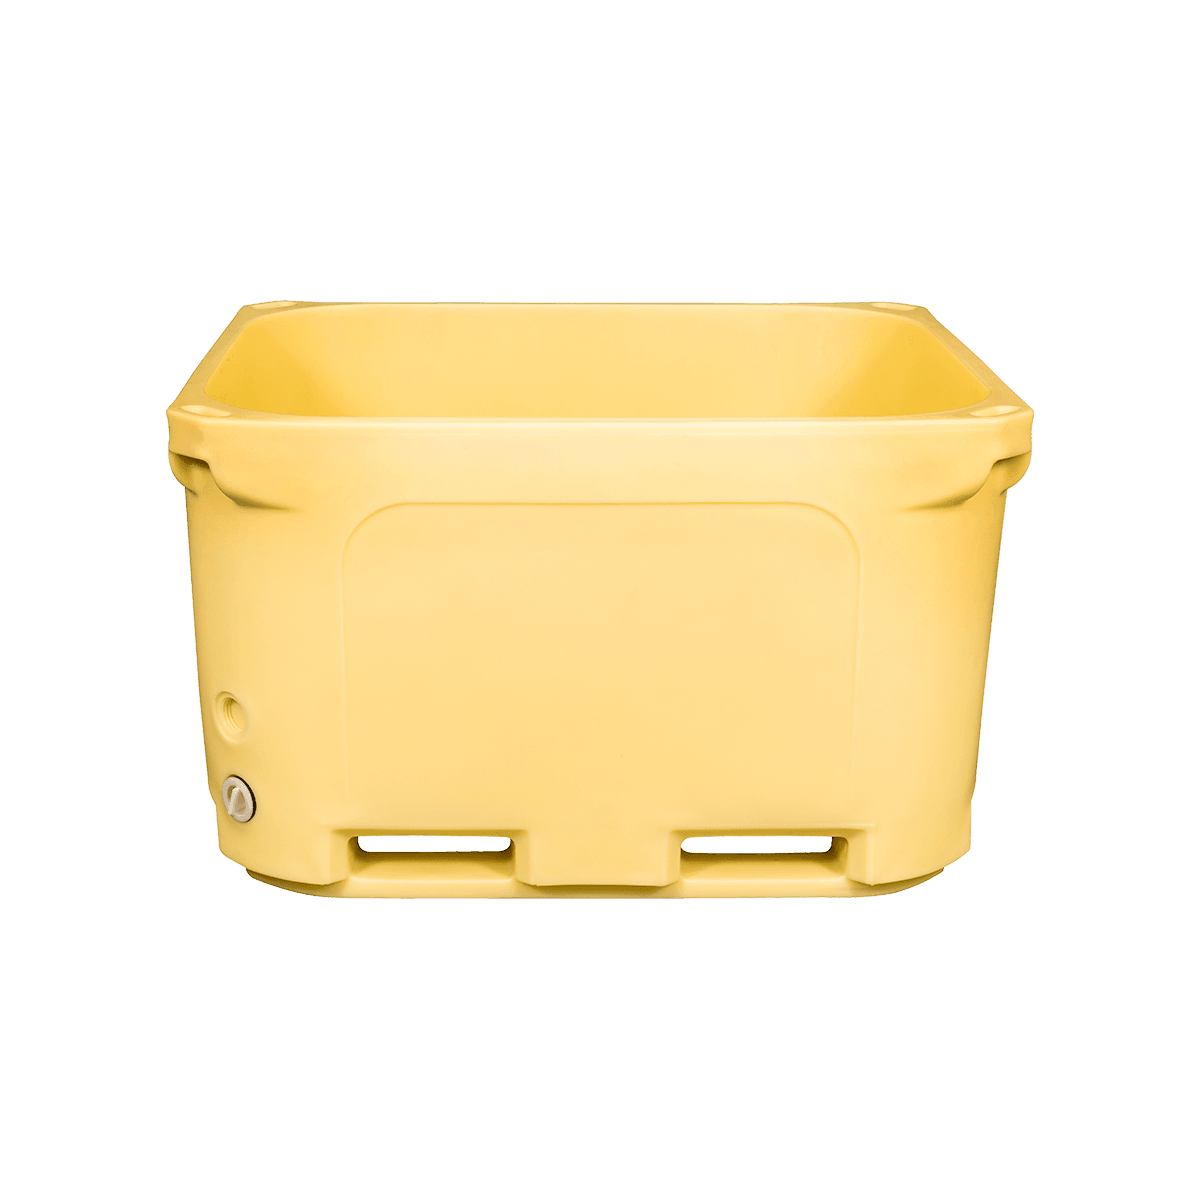 F-660L bin de alimentos apilables de plástico Taller y almacén Uso bin de cadena de frío